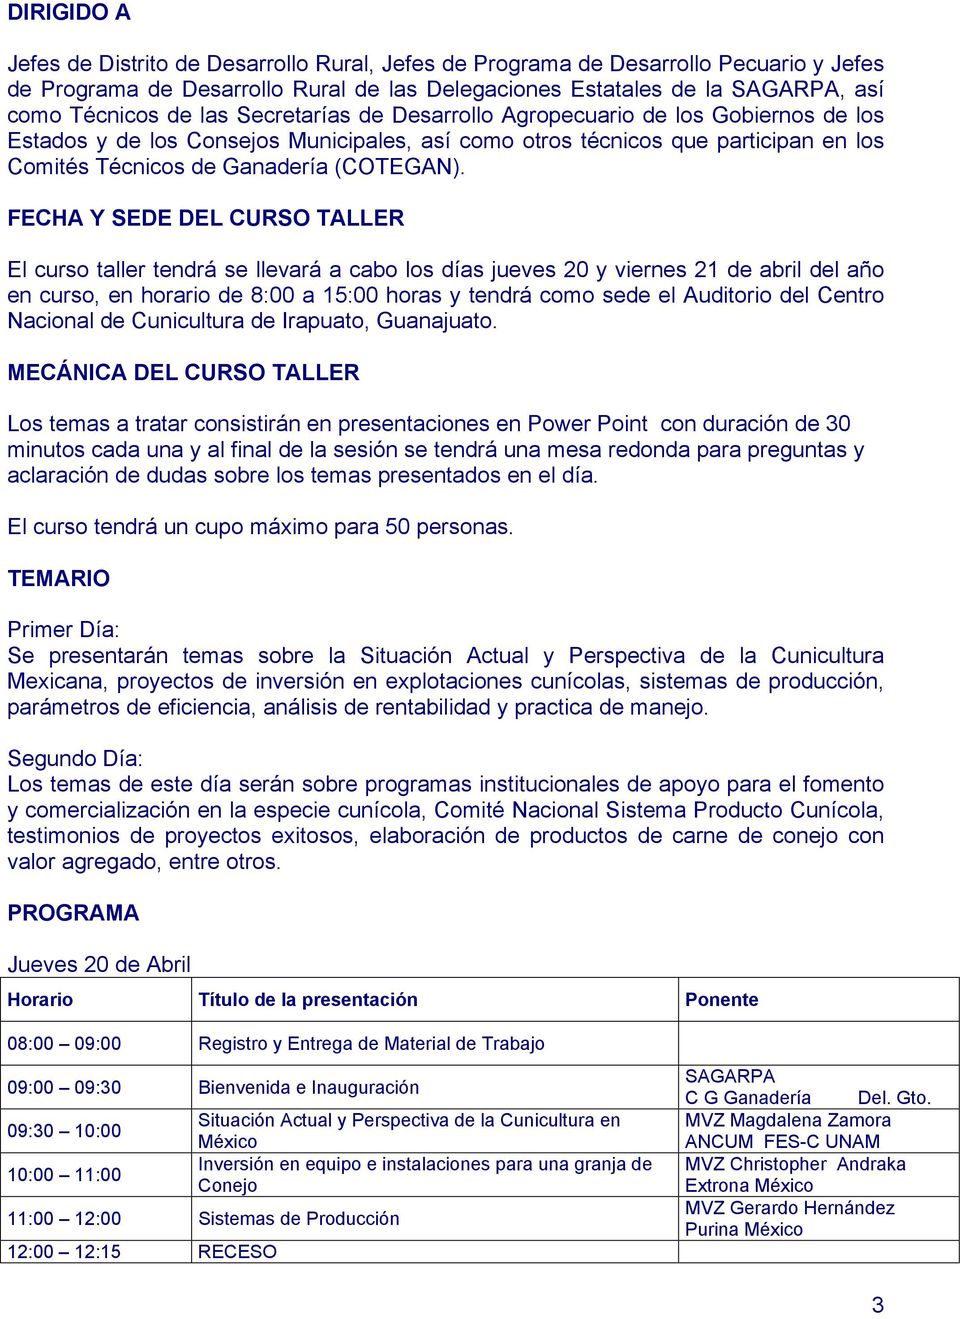 FECHA Y SEDE DEL CURSO TALLER El curso taller tendrá se llevará a cabo los días jueves 20 y viernes 21 de abril del año en curso, en horario de 8:00 a 15:00 horas y tendrá como sede el Auditorio del